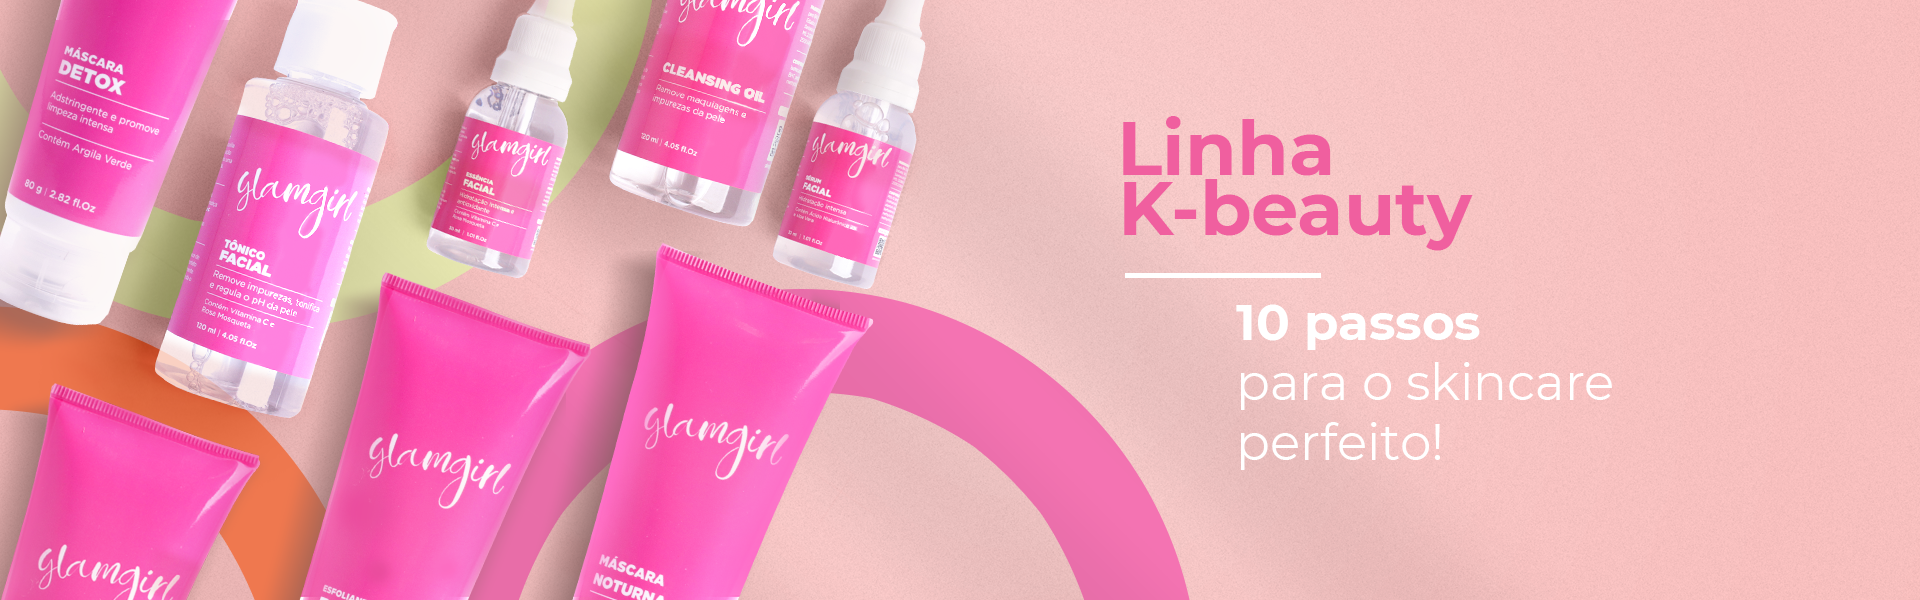 Linha K-Beauty: 10 passos para a pele perfeita